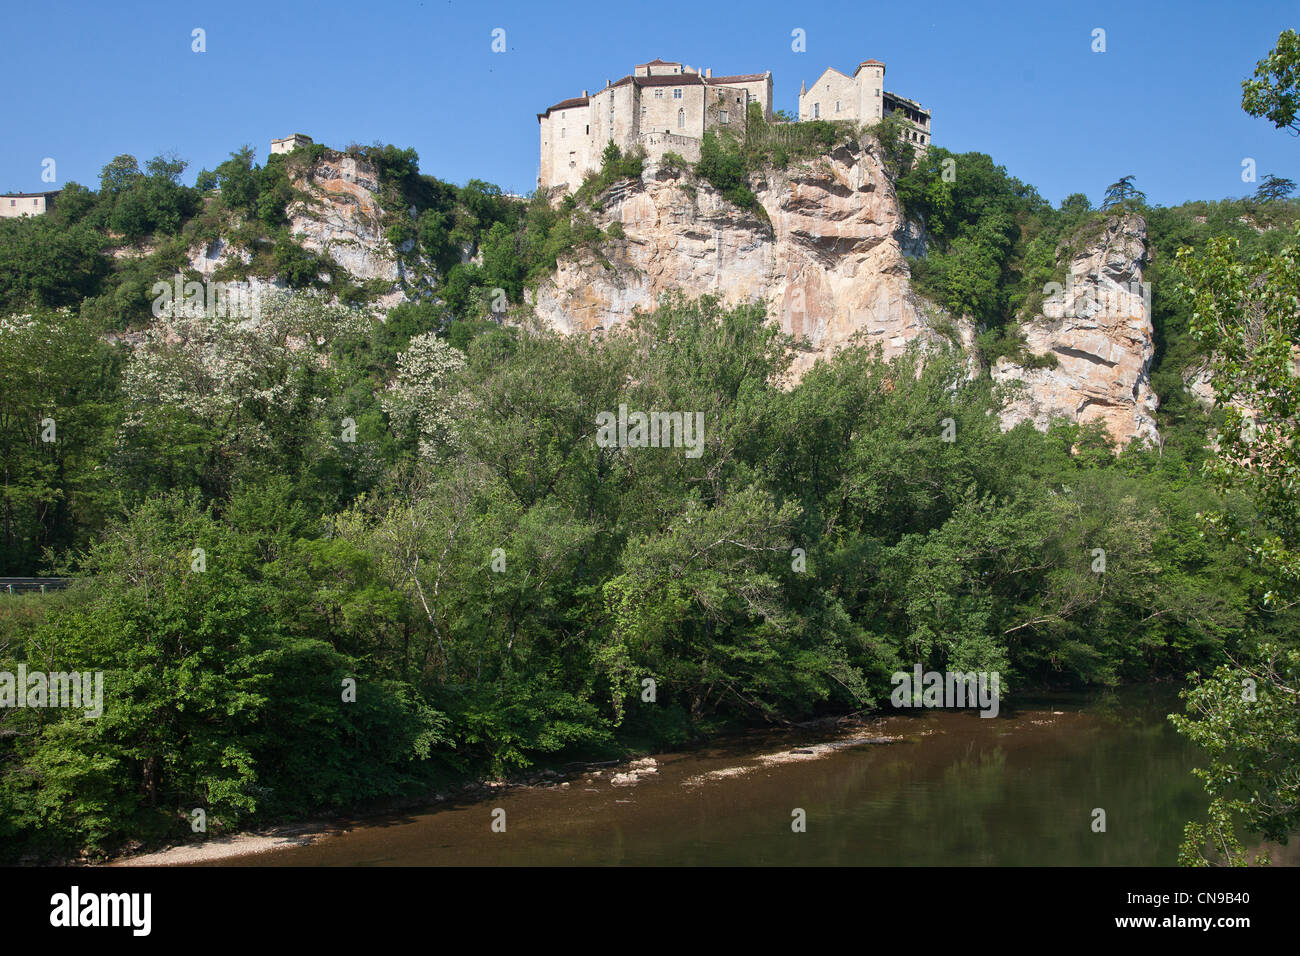 France, Tarn et Garonne, Bruniquel, labelled Les Plus Beaux Villages de France (the Most Beautiful Villages of France), the Stock Photo